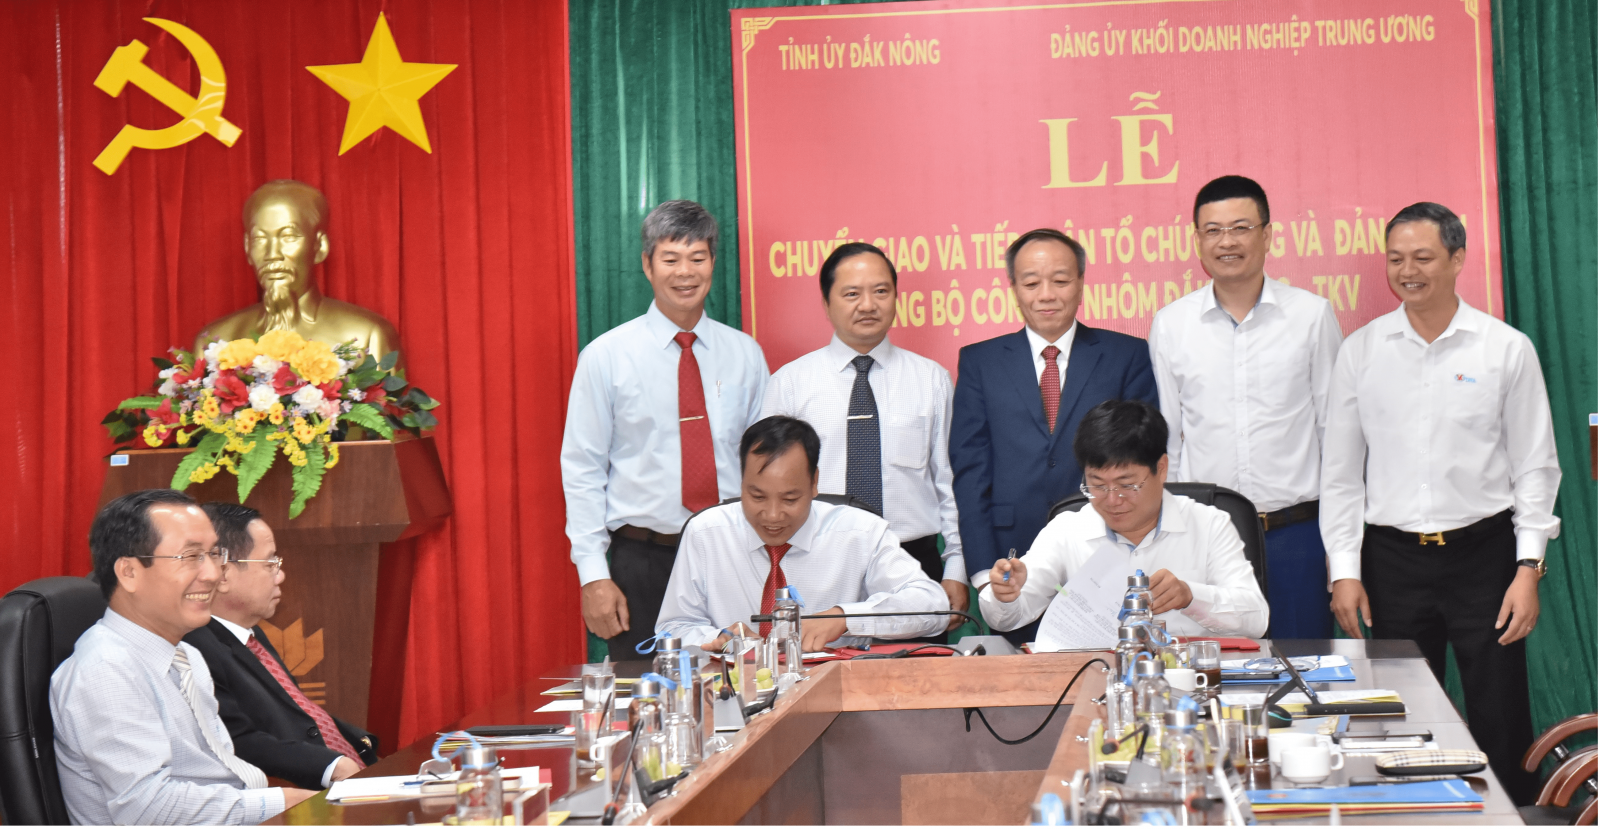 Lễ chuyển giao Đảng bộ Công ty Nhôm Đắk Nông về Đảng bộ Tập đoàn Than - khoáng sản Việt Nam